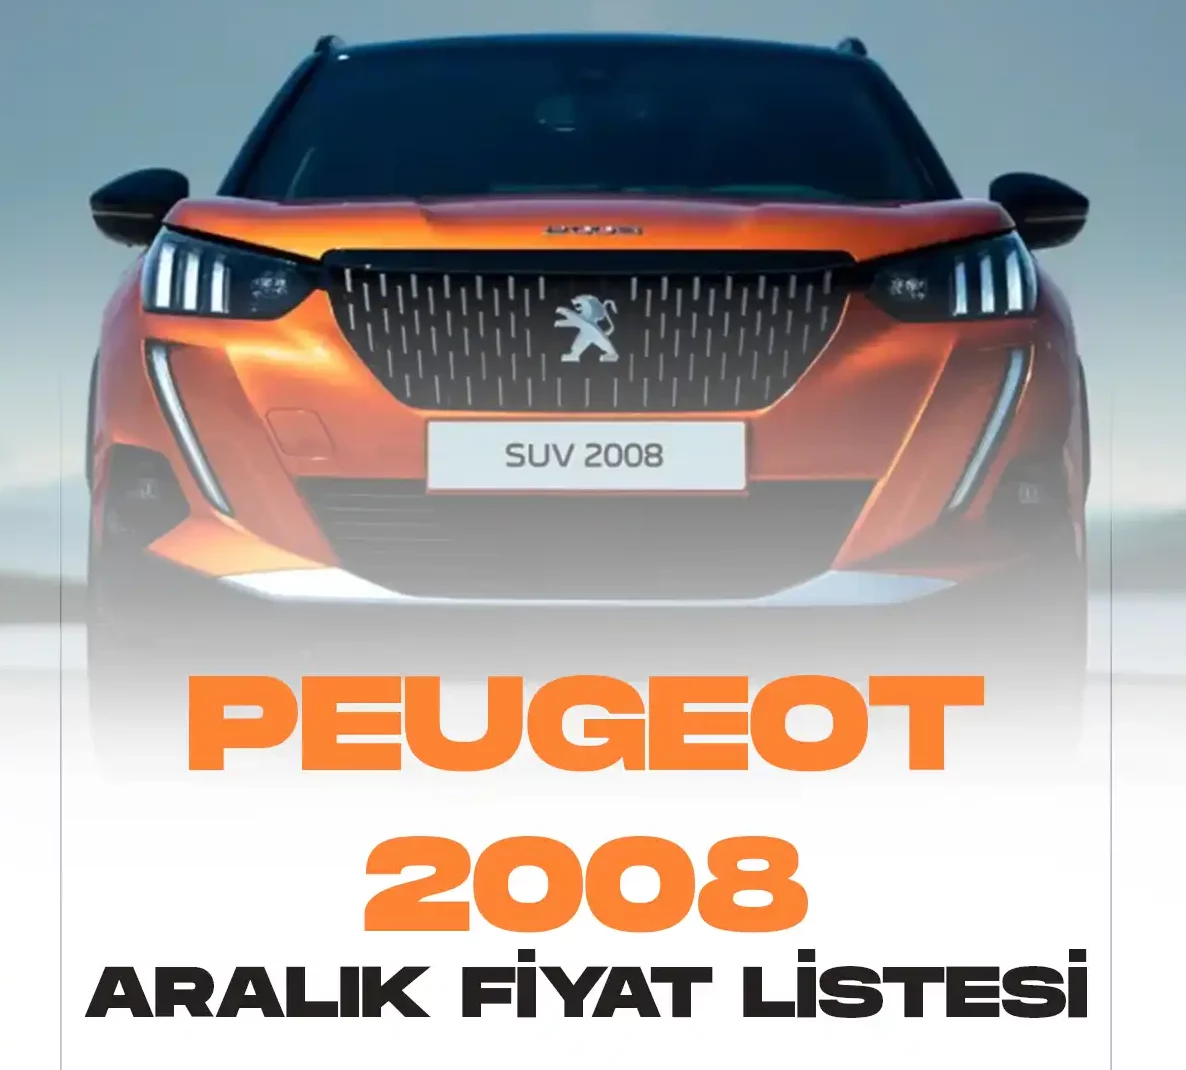 Peugeot Suv 2008 Aralık fiyat listesi yayımlandı. Popüler araç markalarından biri olan Peugeot ülkemizde sürücüler tarafından en çok tercih edilen modeller arasında yer alıyor.